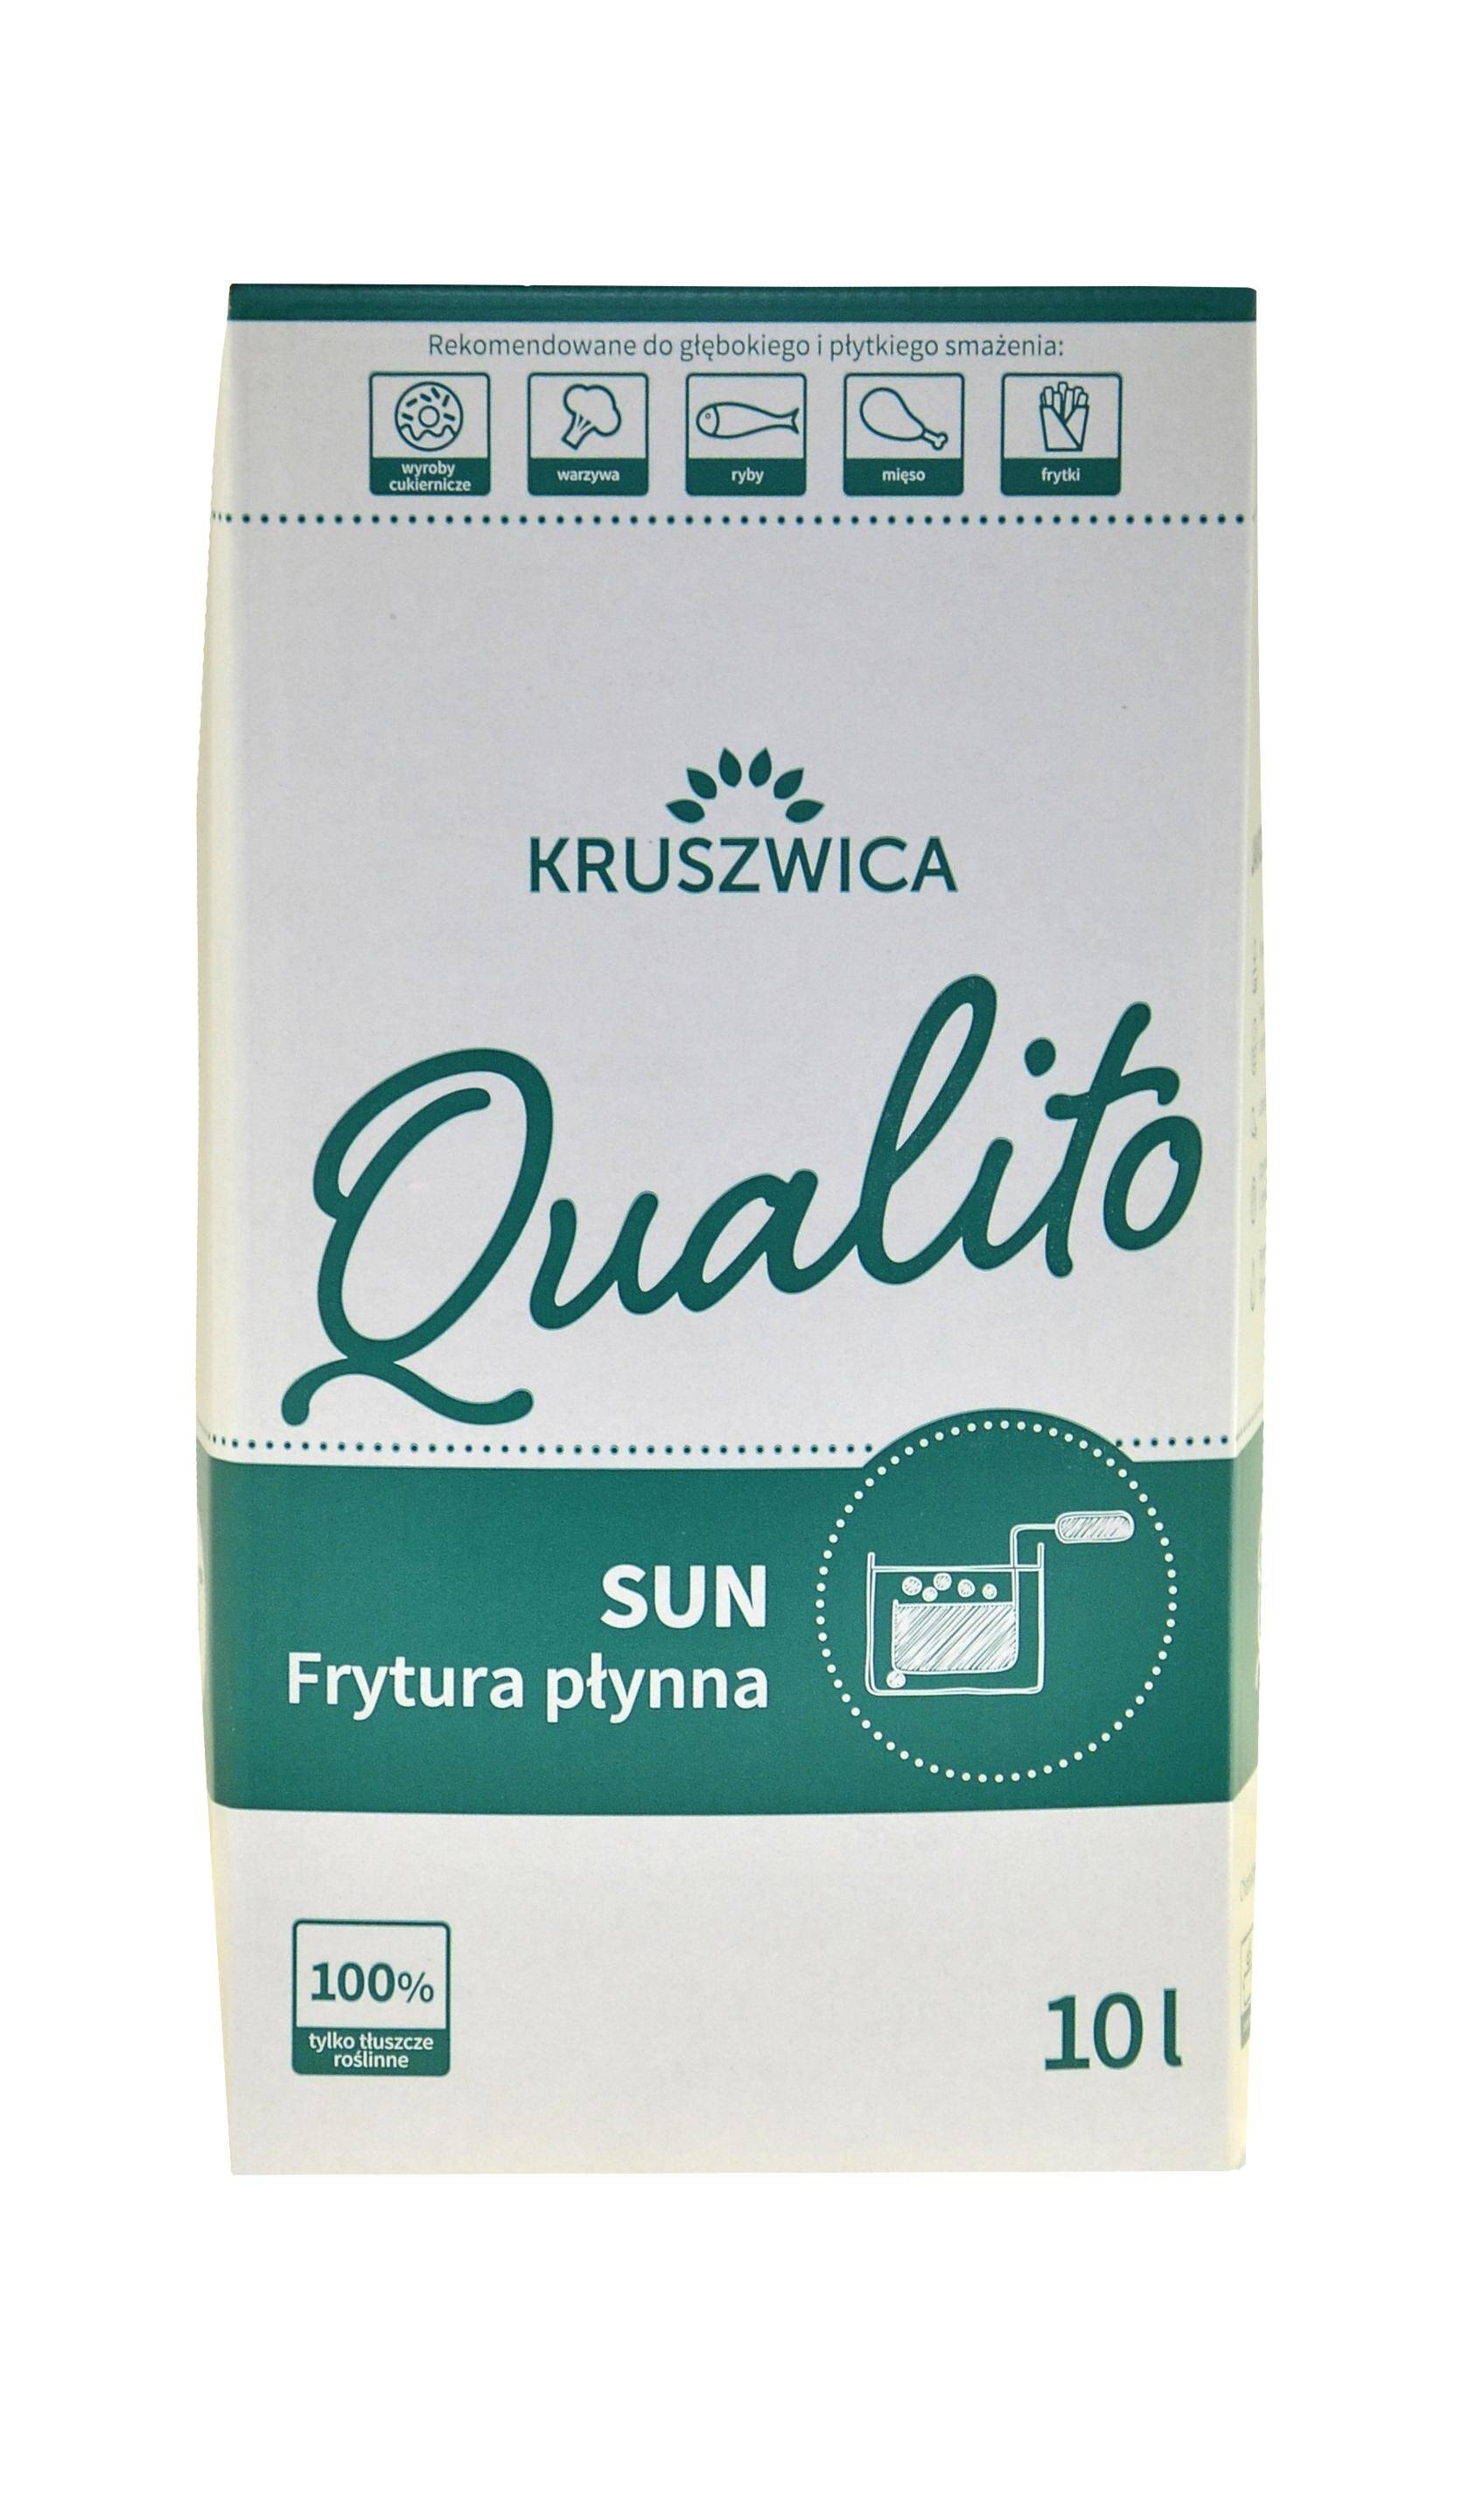 Olej frytura płynna Qualito Sun 10L Kruszwica